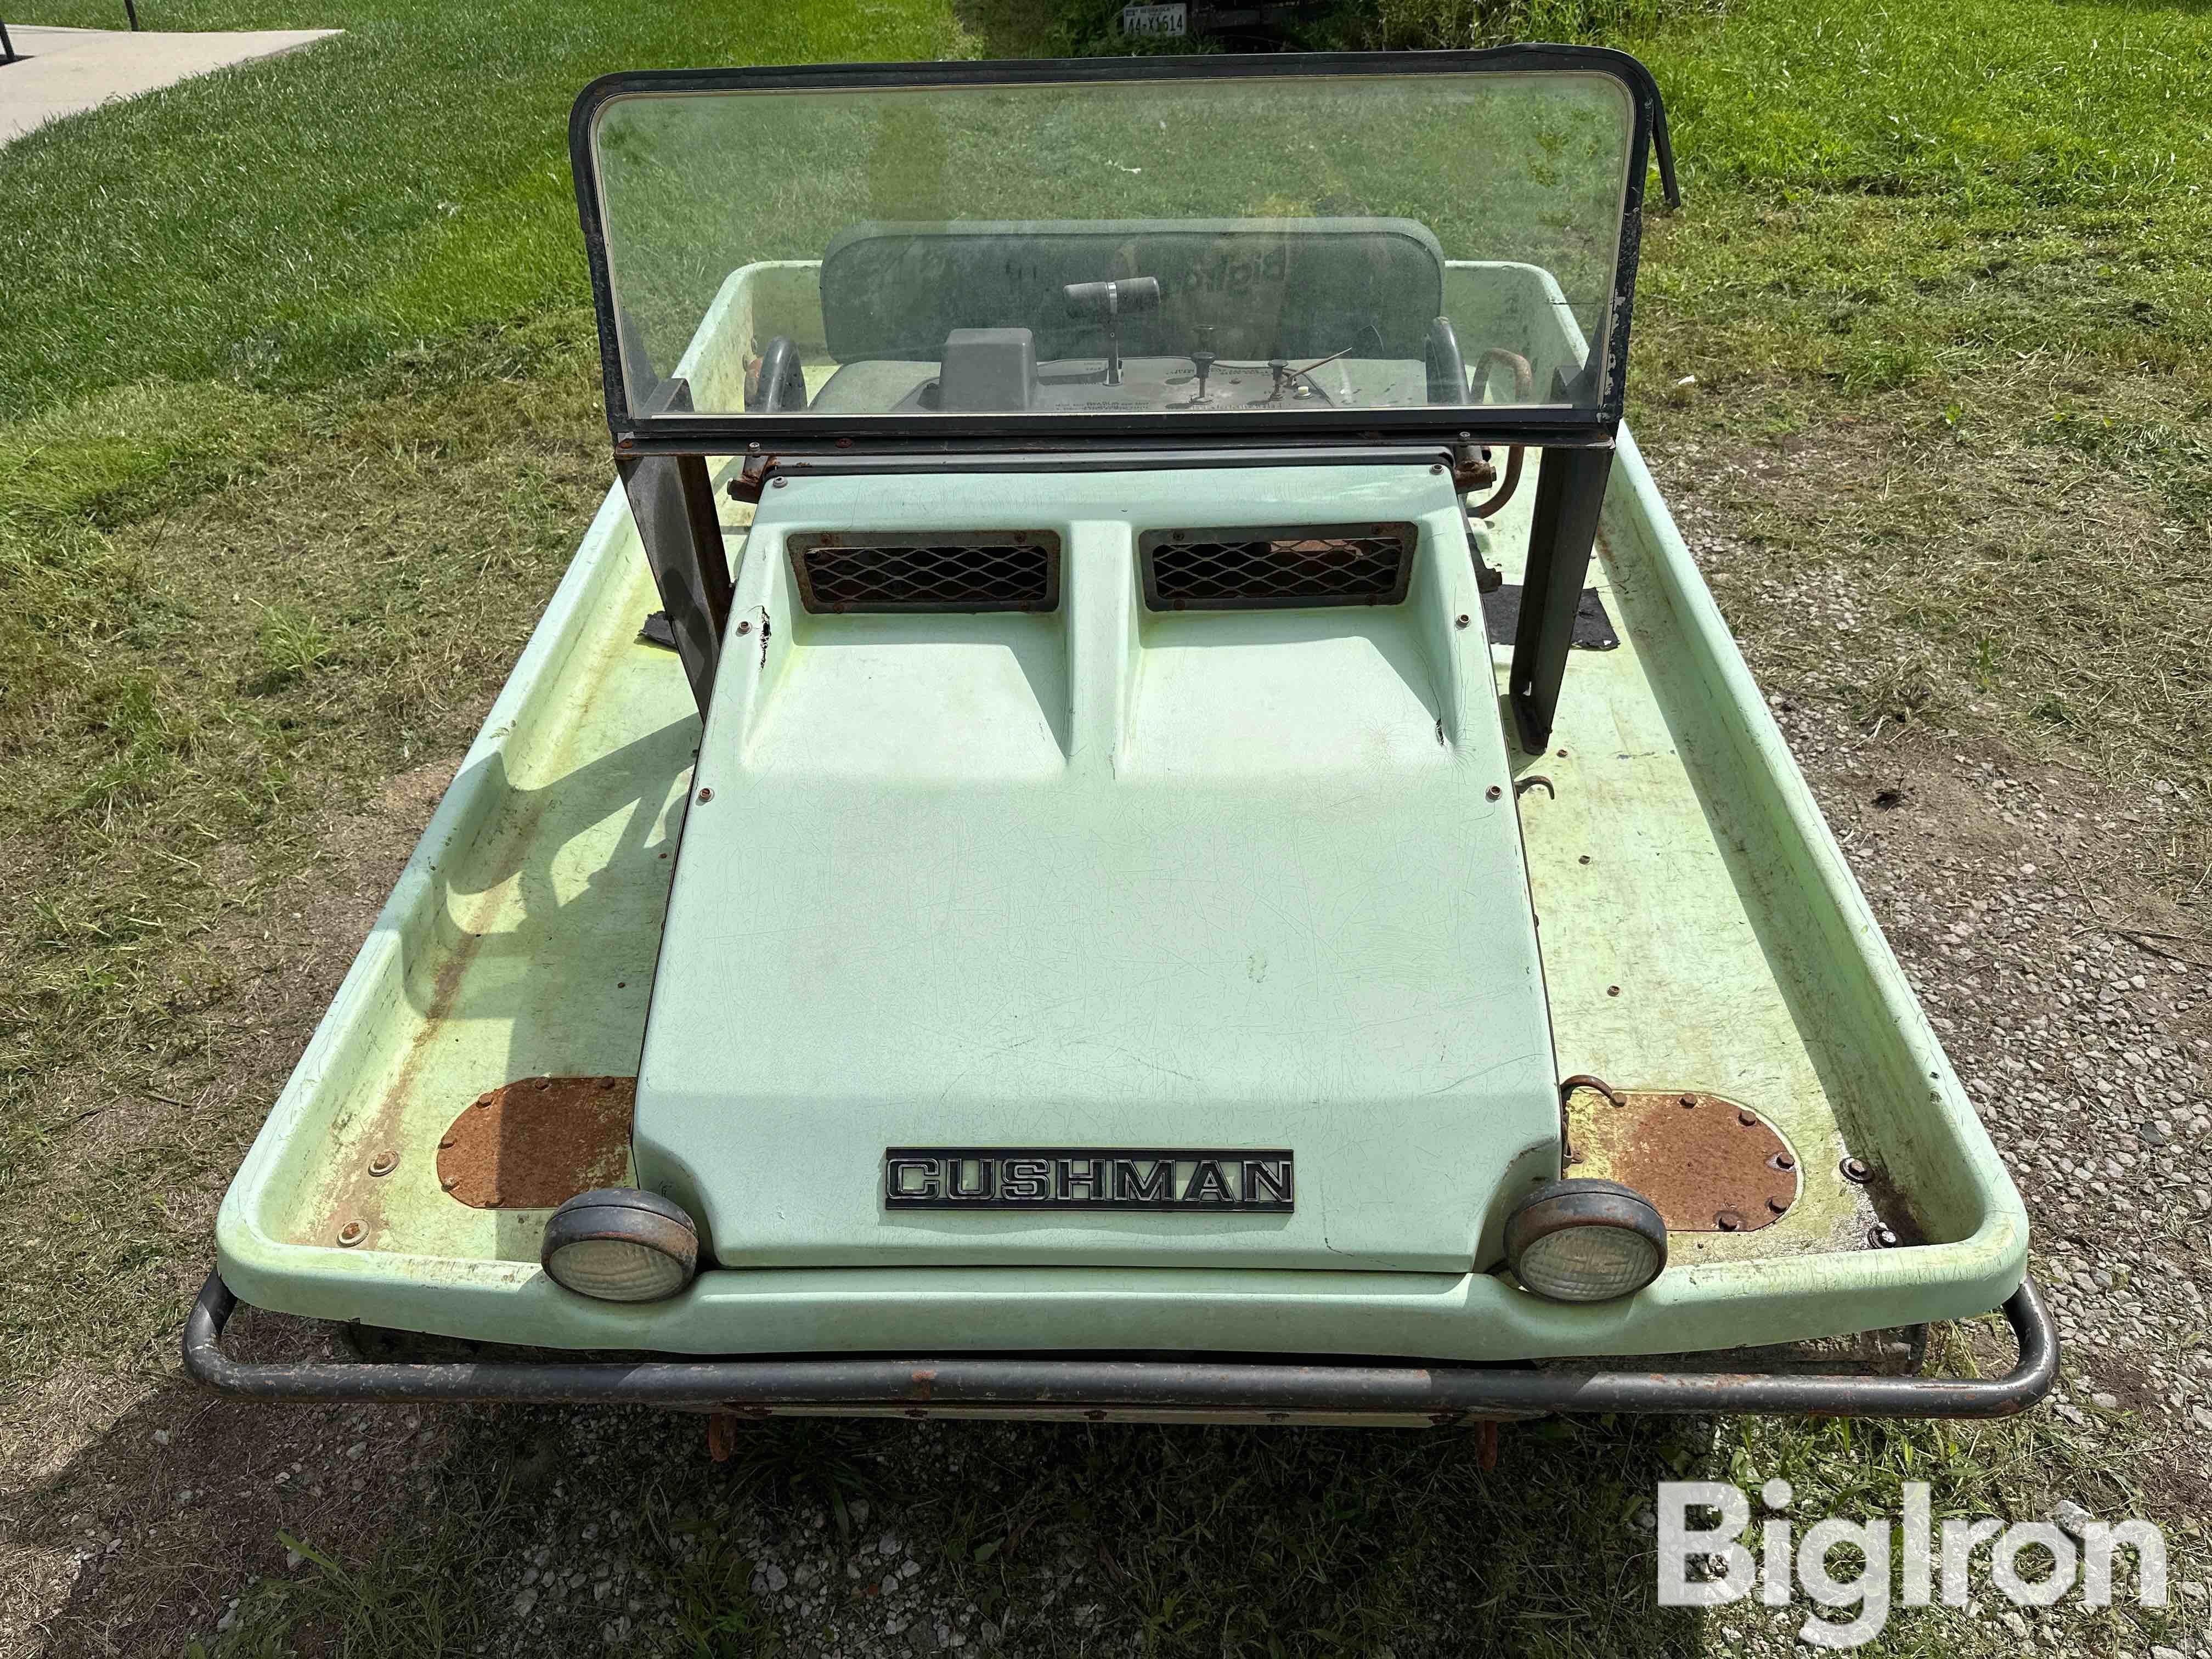 1971 Cushman Trackster Snowmobile BigIron Auctions